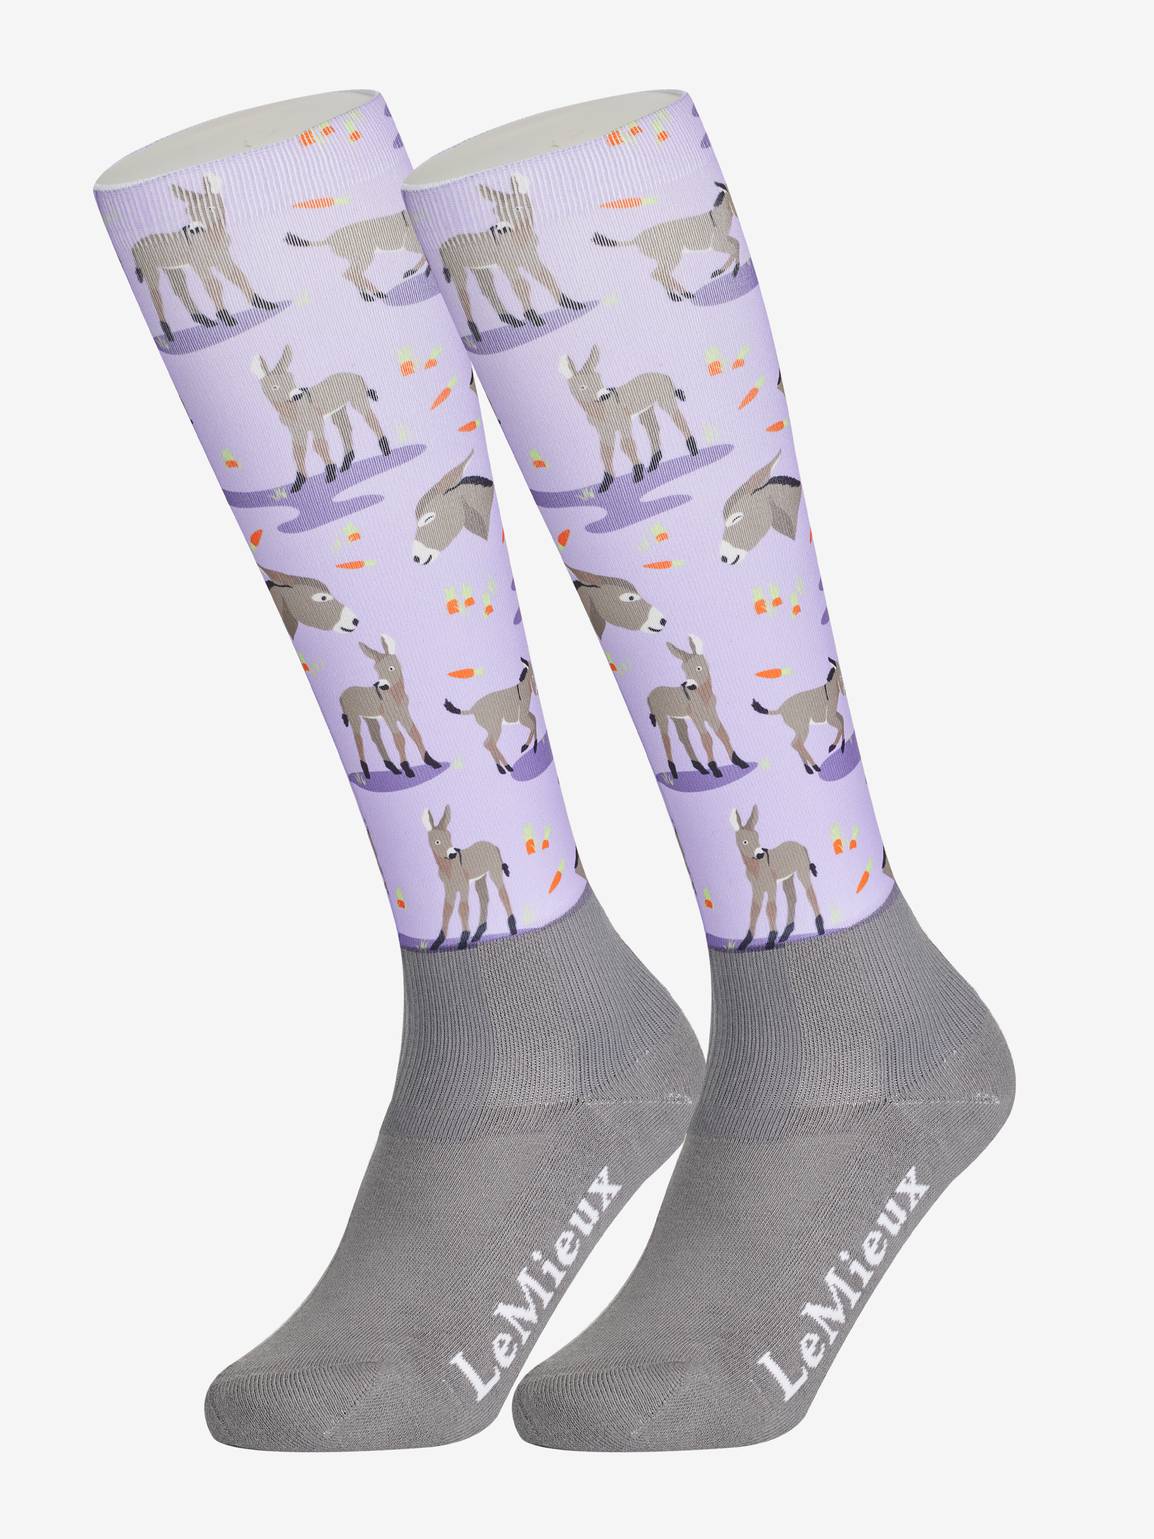 LeMieux Footsie Socks Donkeys Adult